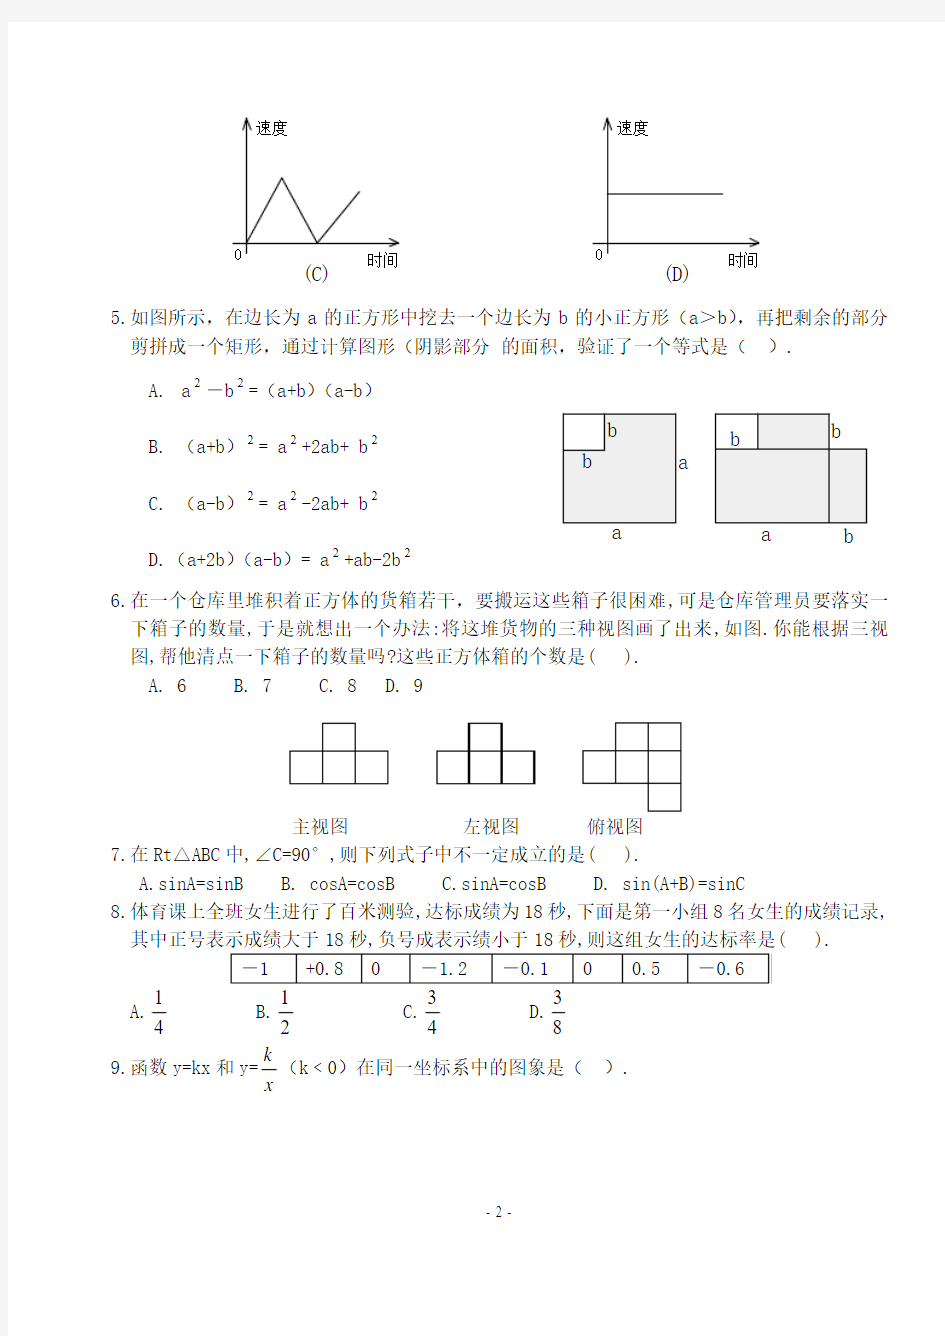 2018年广东省初中数学竞赛初赛试卷(含答案)